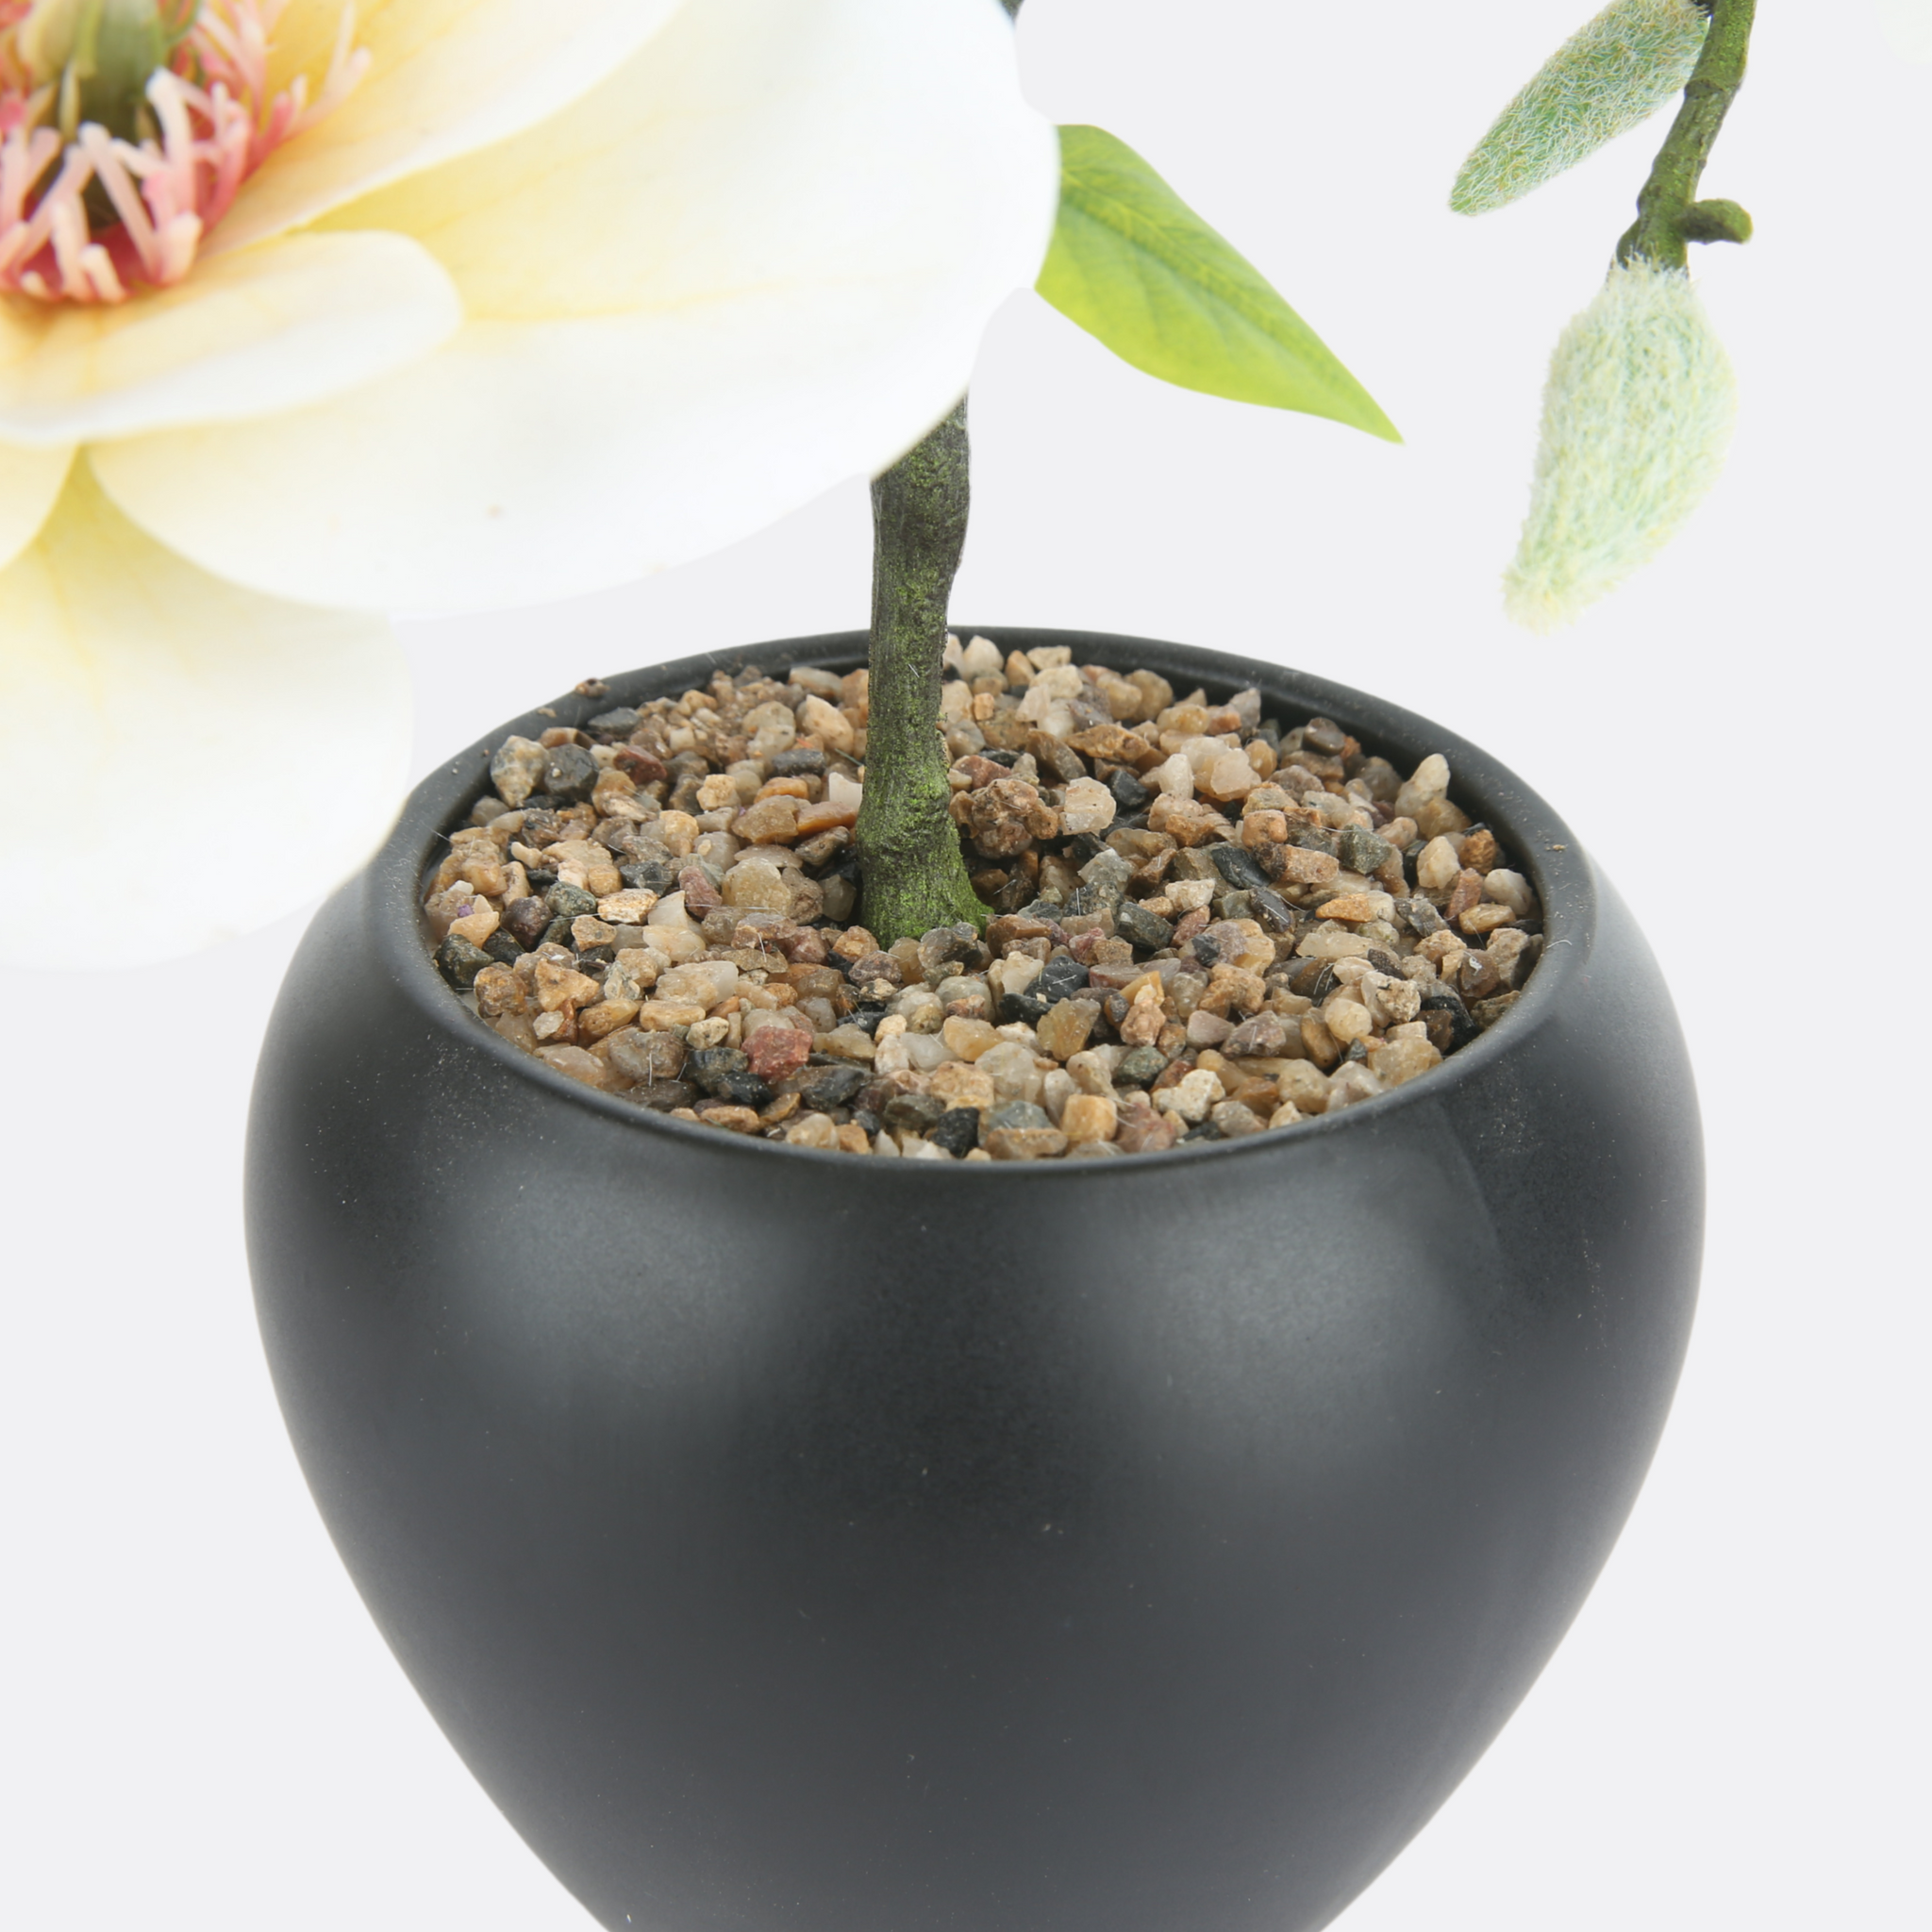 Caucasian Planter in Black Ceramic Pot